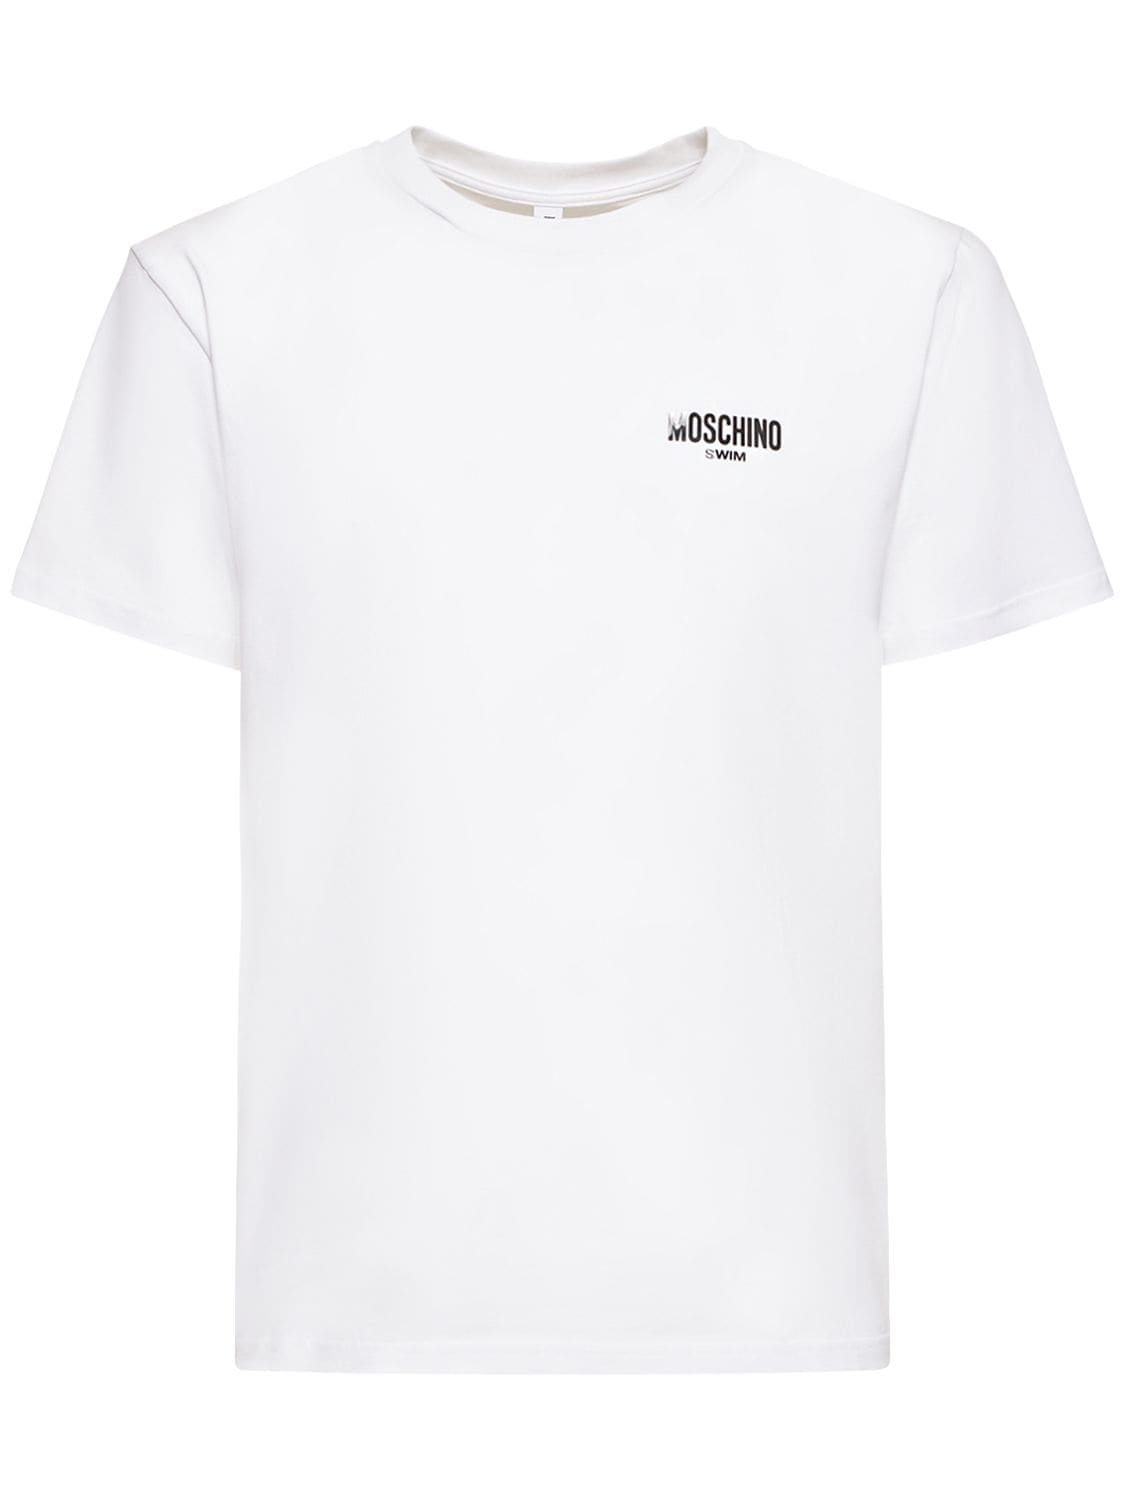 MOSCHINO UNDERWEAR Logo Print Cotton Jersey T-shirt